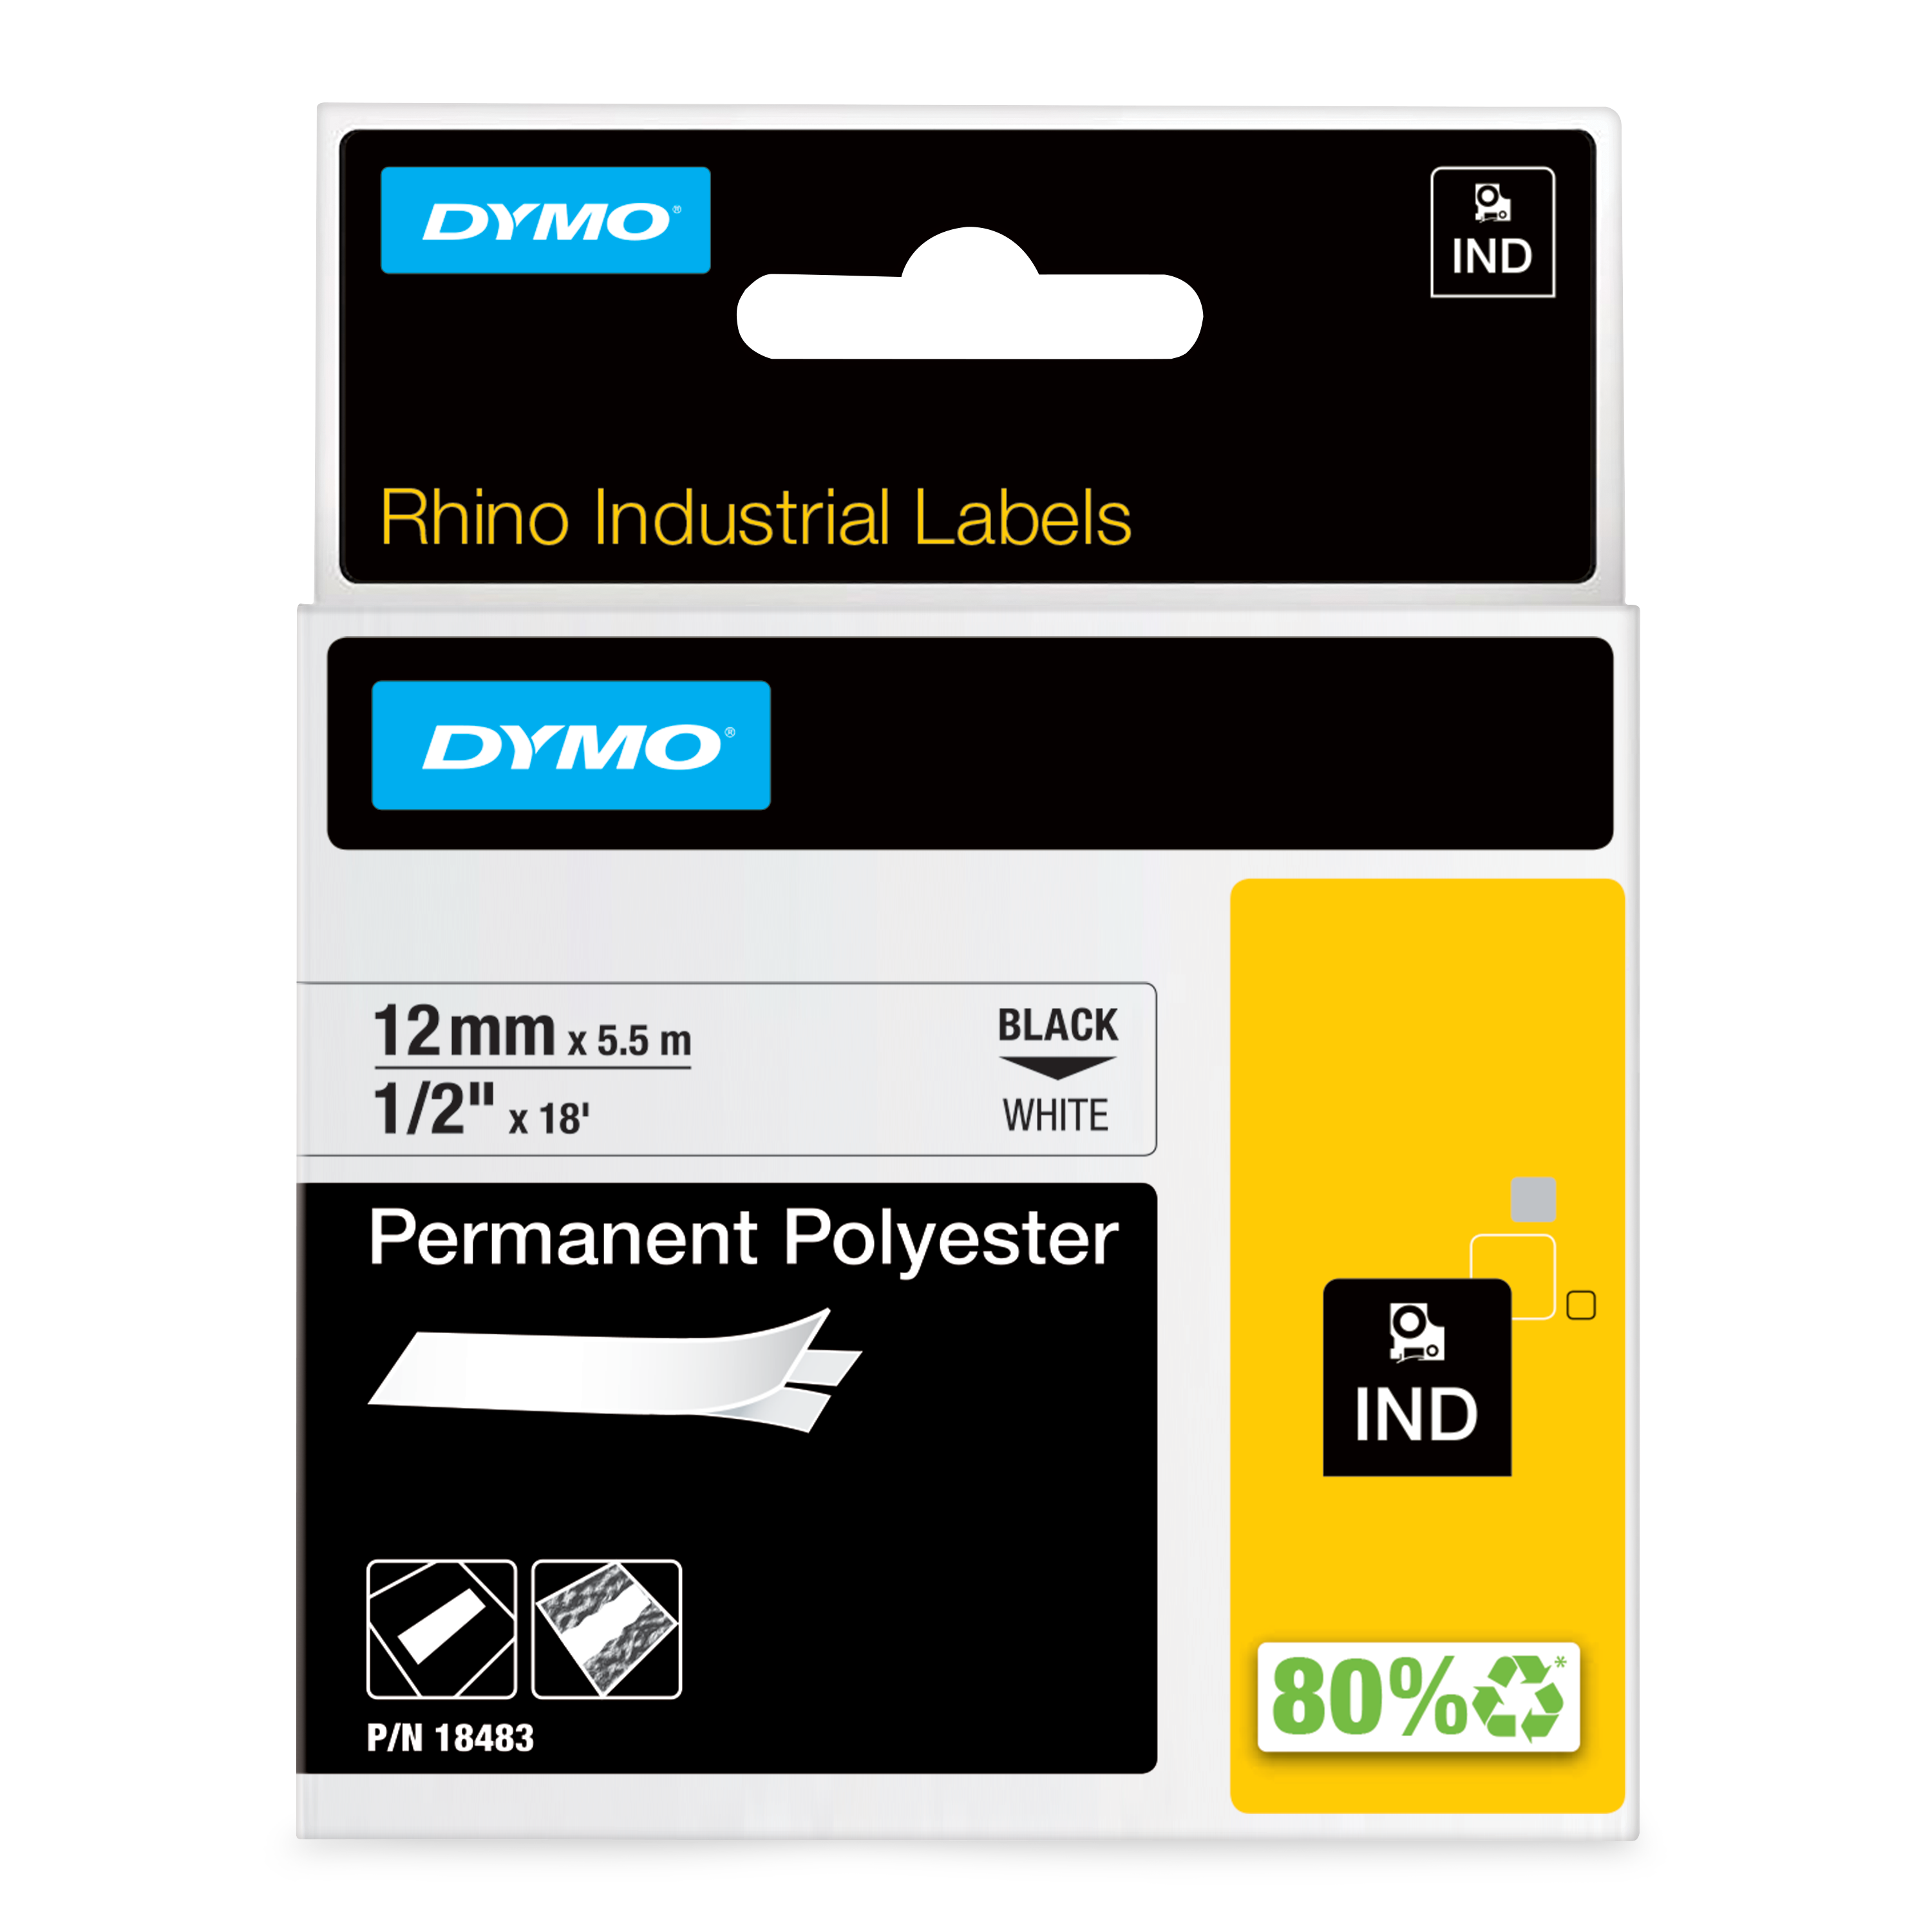 Dymo Black on White Label Printer Tape, 5.5 m Length, 12 mm Width